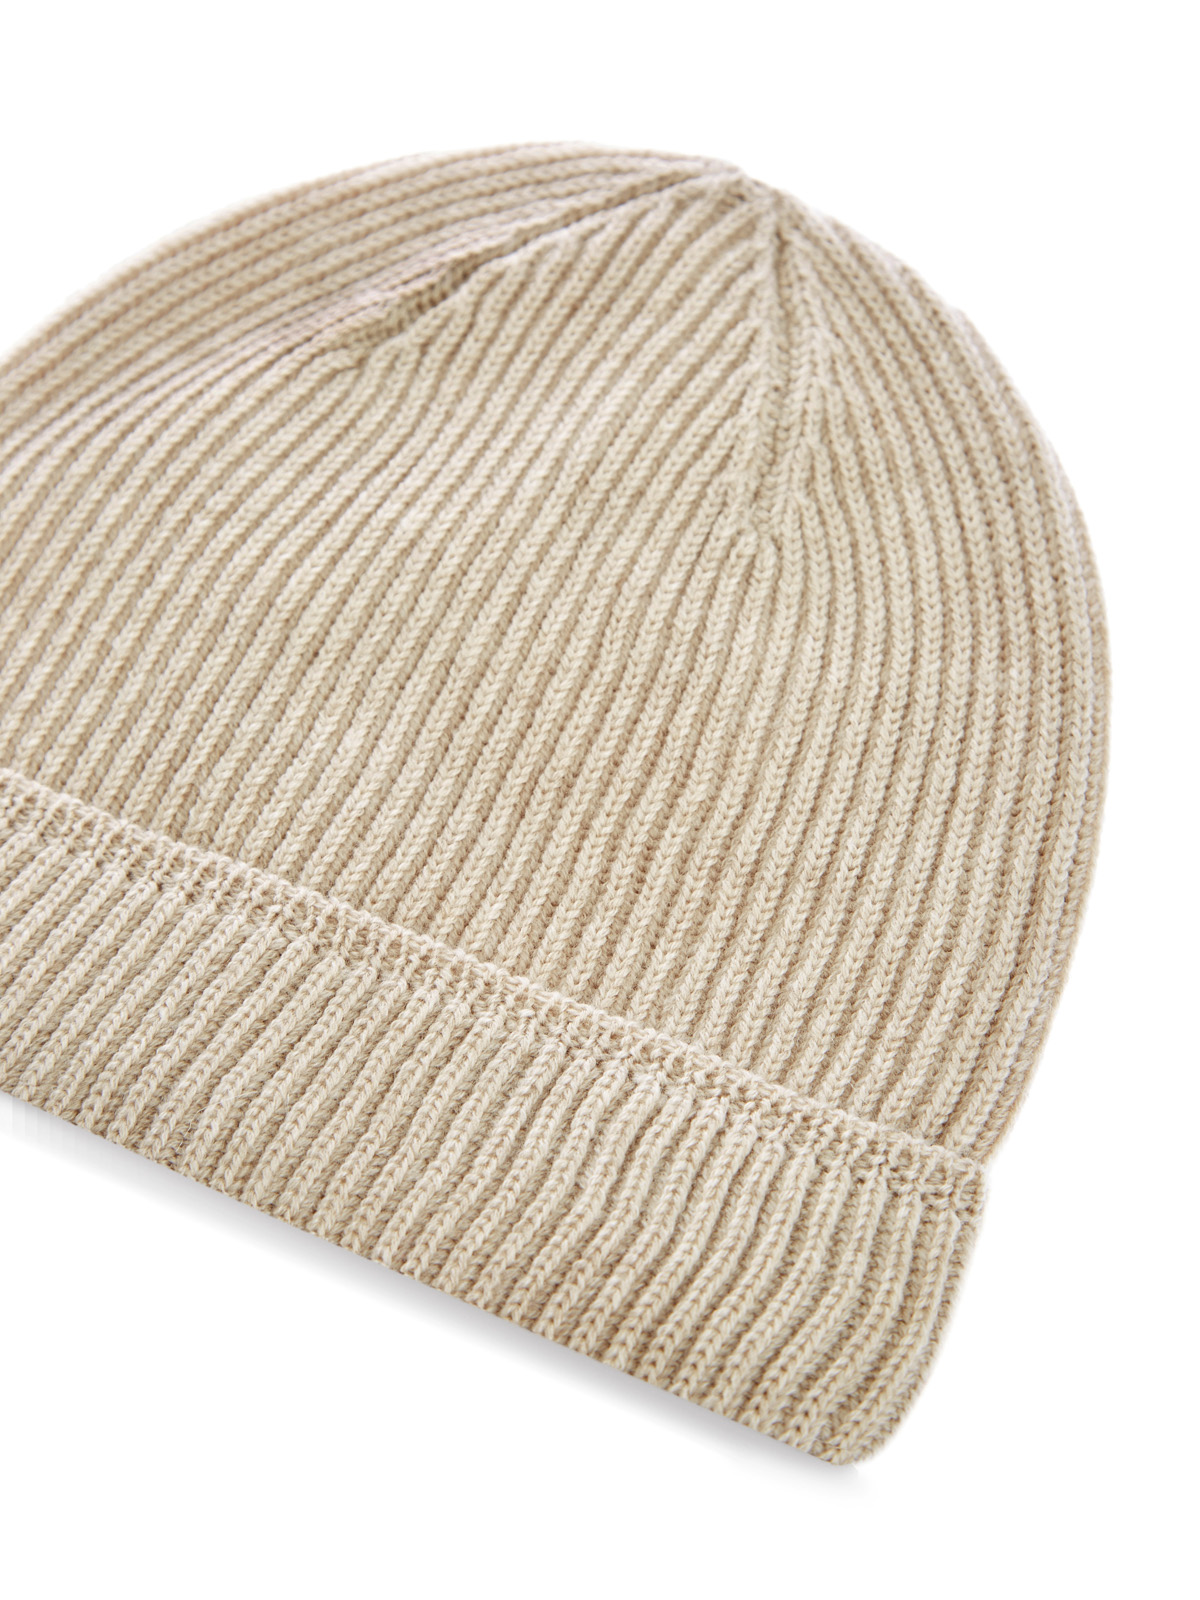 Теплая шапка из шерстяной пряжи в английскую резинку CANALI, цвет бежевый, размер 52;54;56;58;60 - фото 3